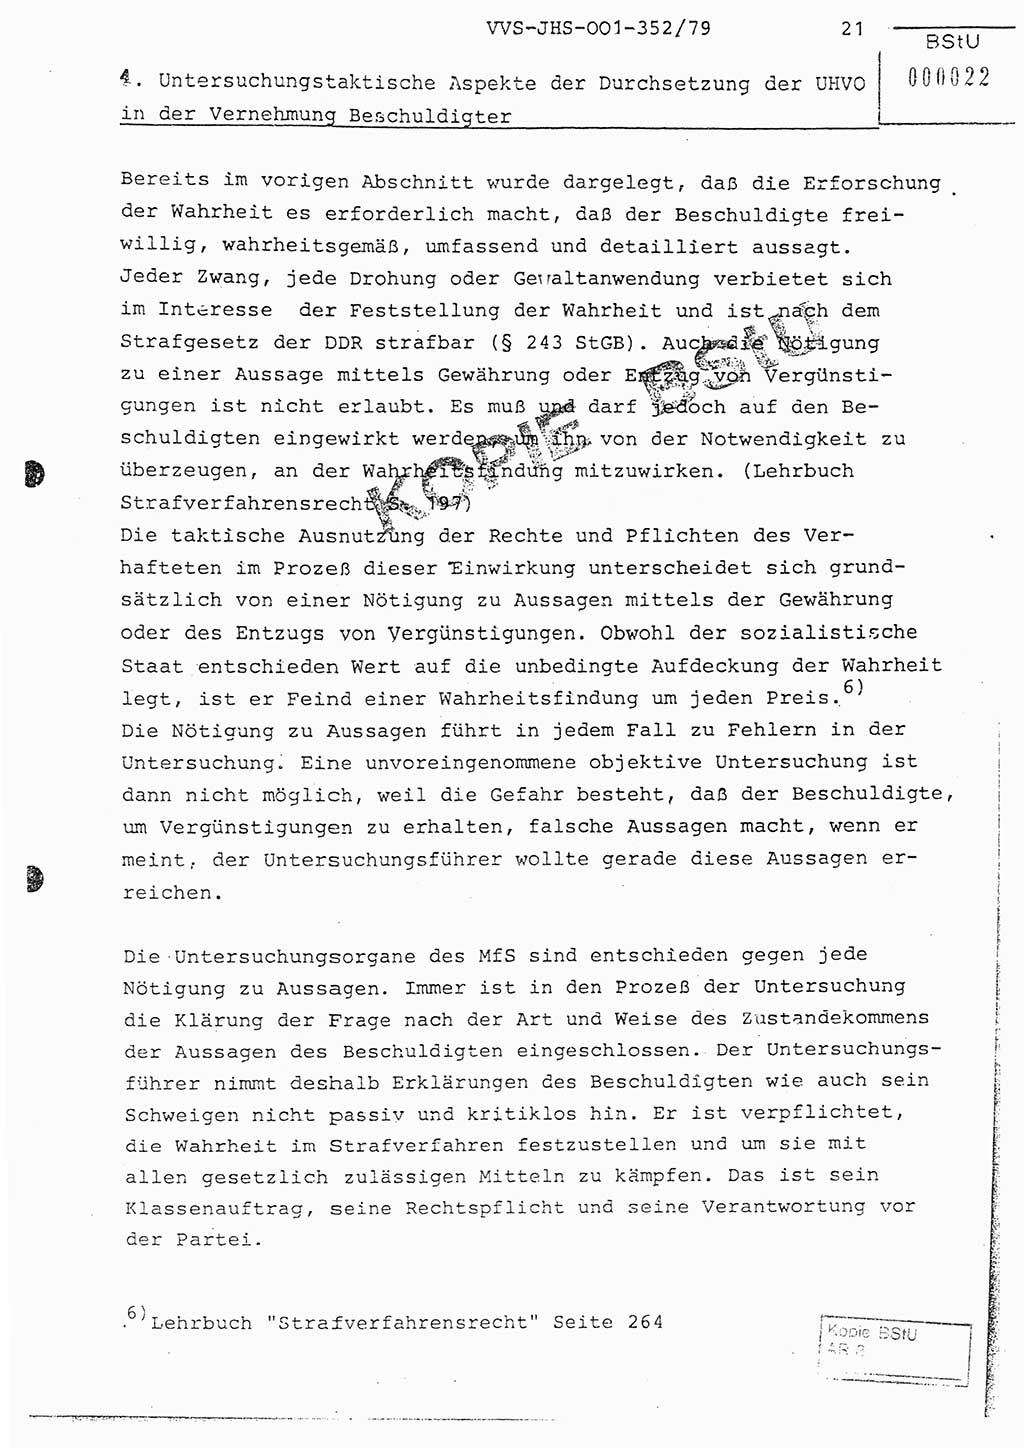 Diplomarbeit Hauptmann Peter Wittum (BV Bln. Abt. HA Ⅸ), Ministerium für Staatssicherheit (MfS) [Deutsche Demokratische Republik (DDR)], Juristische Hochschule (JHS), Vertrauliche Verschlußsache (VVS) o001-352/79, Potsdam 1979, Seite 21 (Dipl.-Arb. MfS DDR JHS VVS o001-352/79 1979, S. 21)